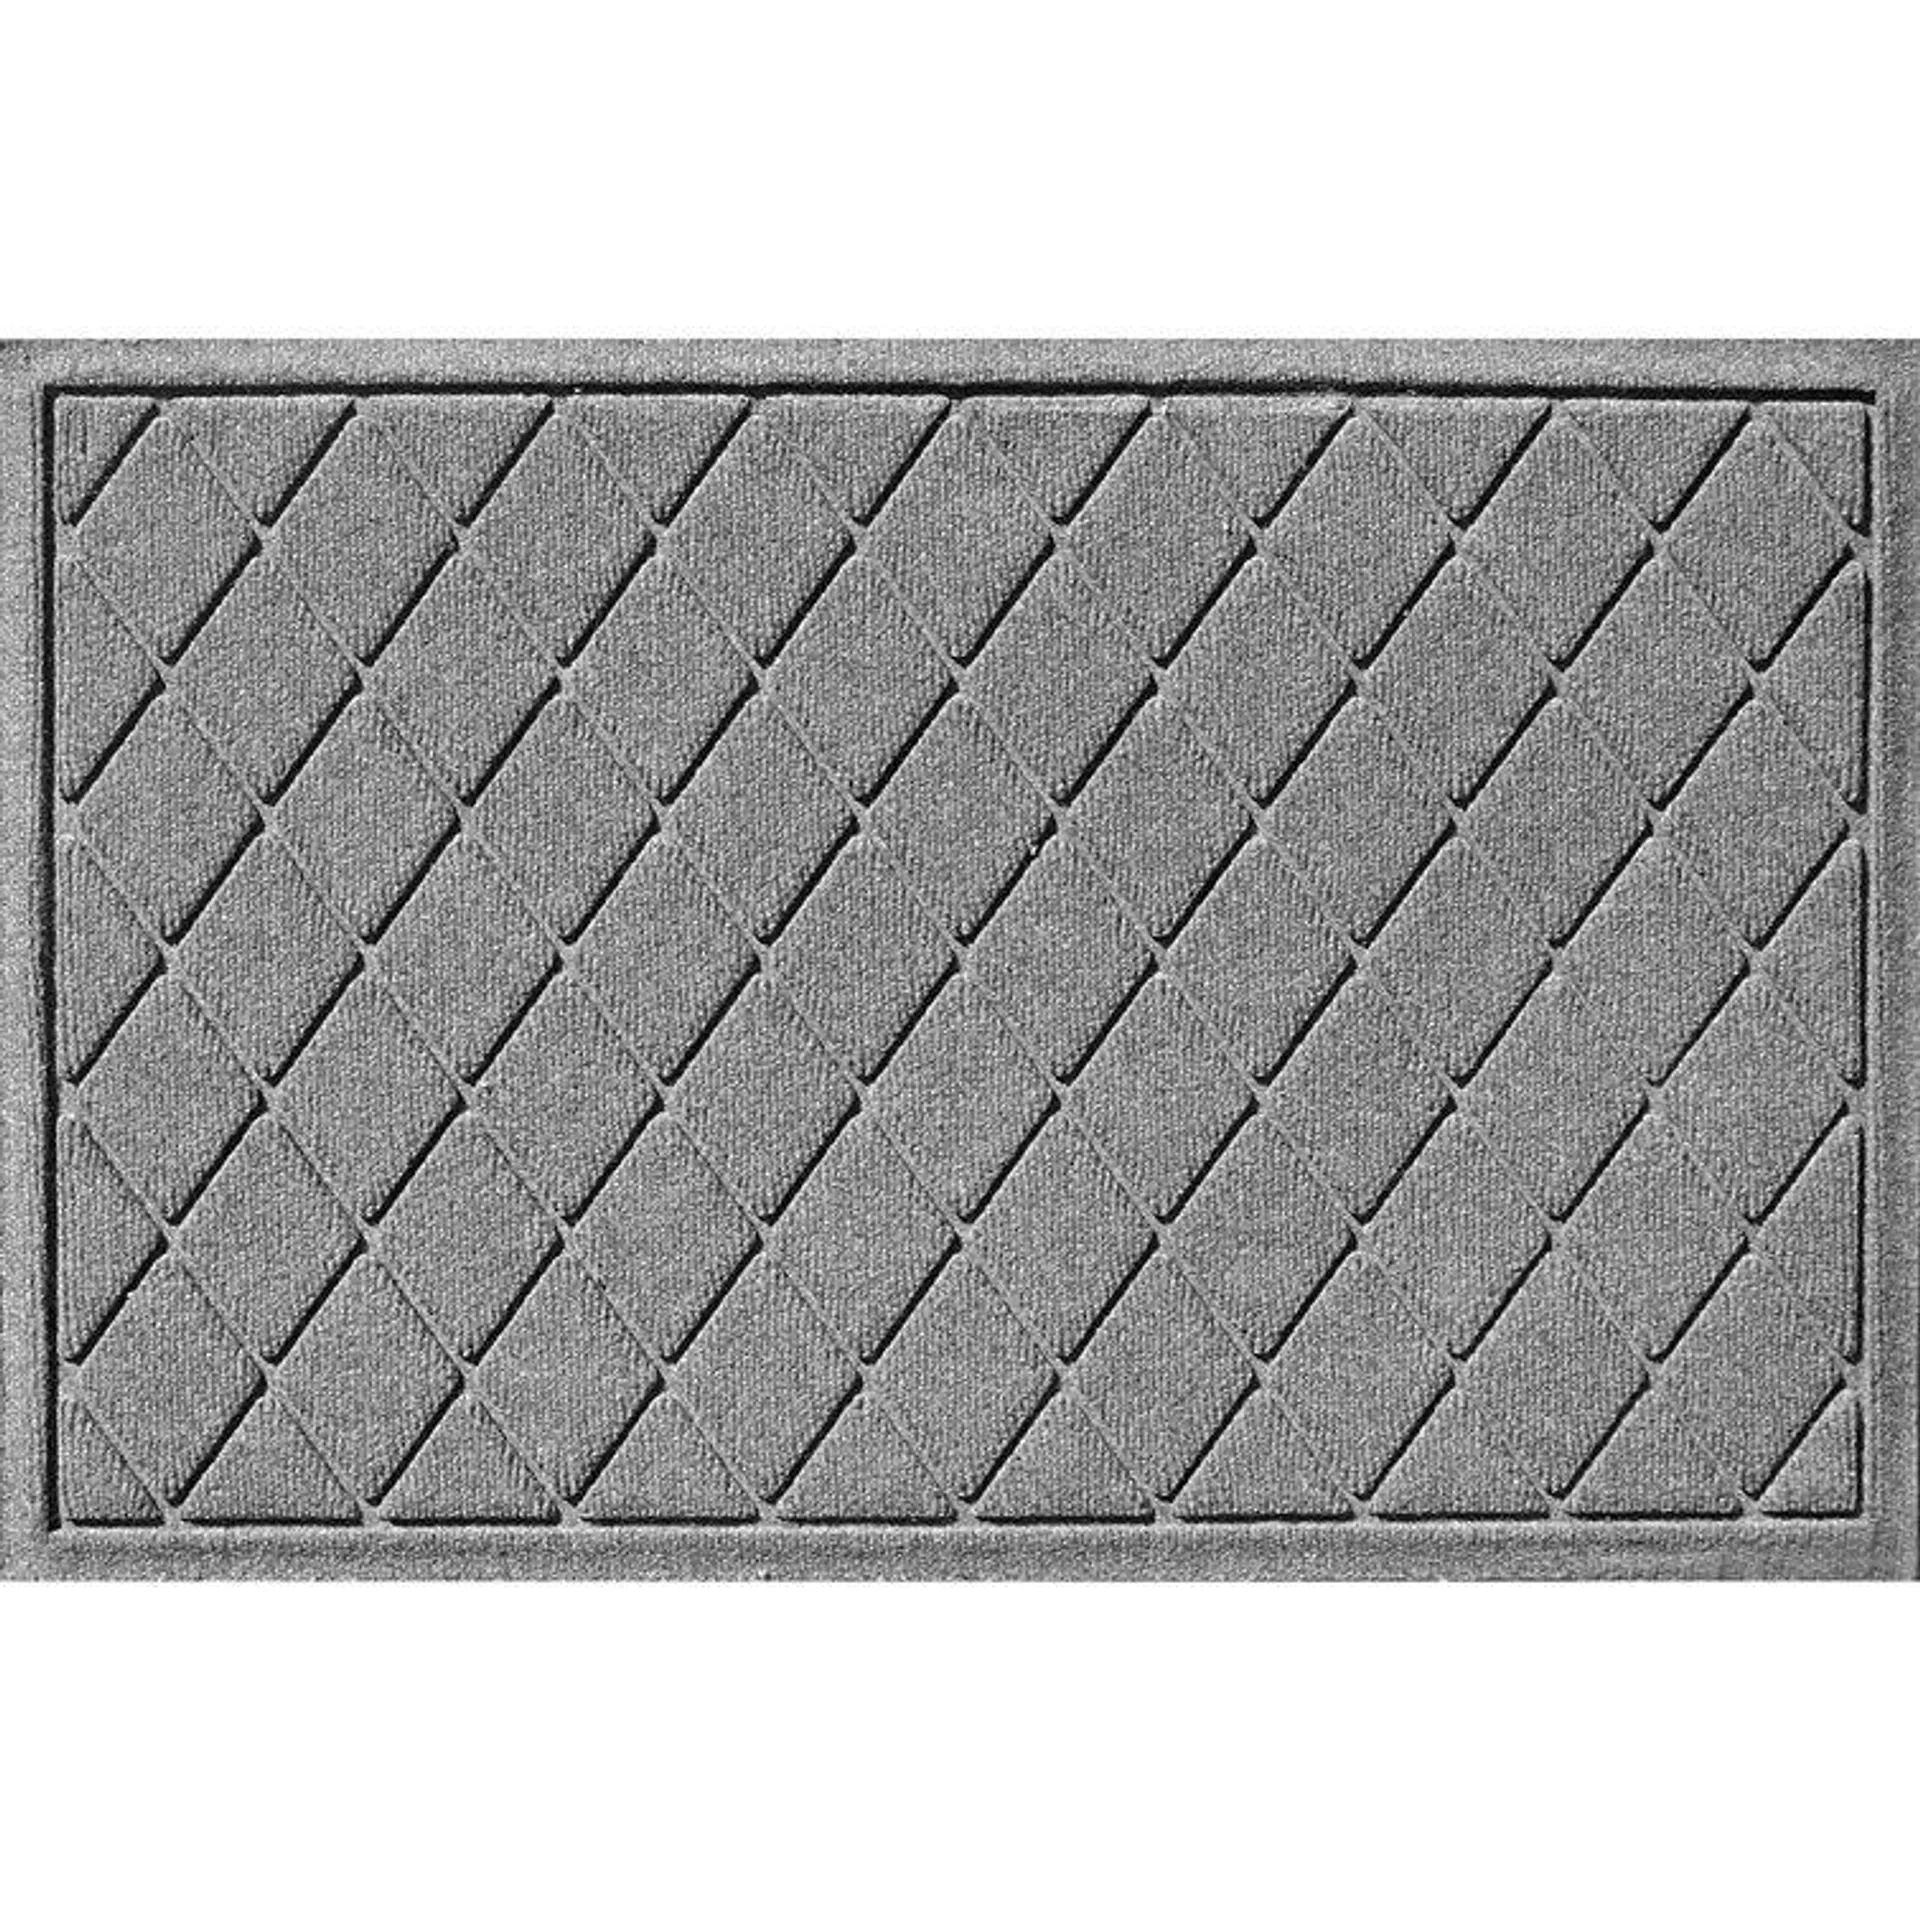 WaterHog Non-Slip Geometric Outdoor Doormat